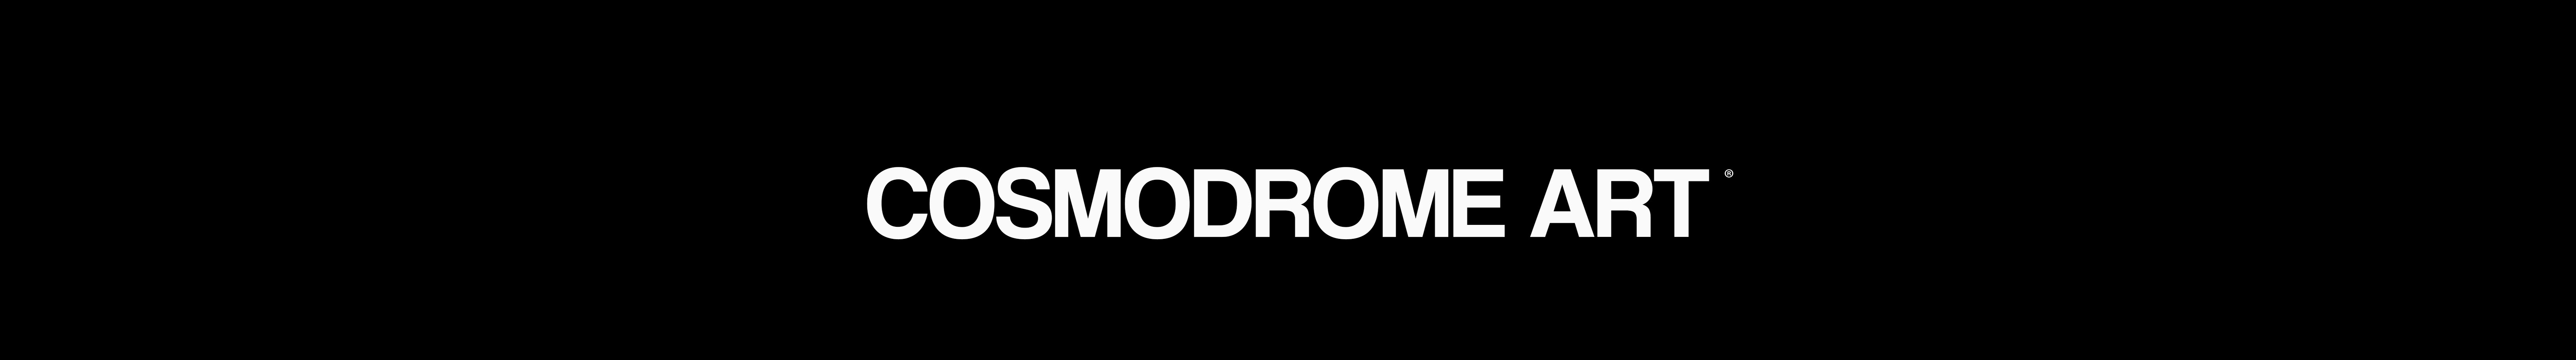 COSMODROME ART's profile banner